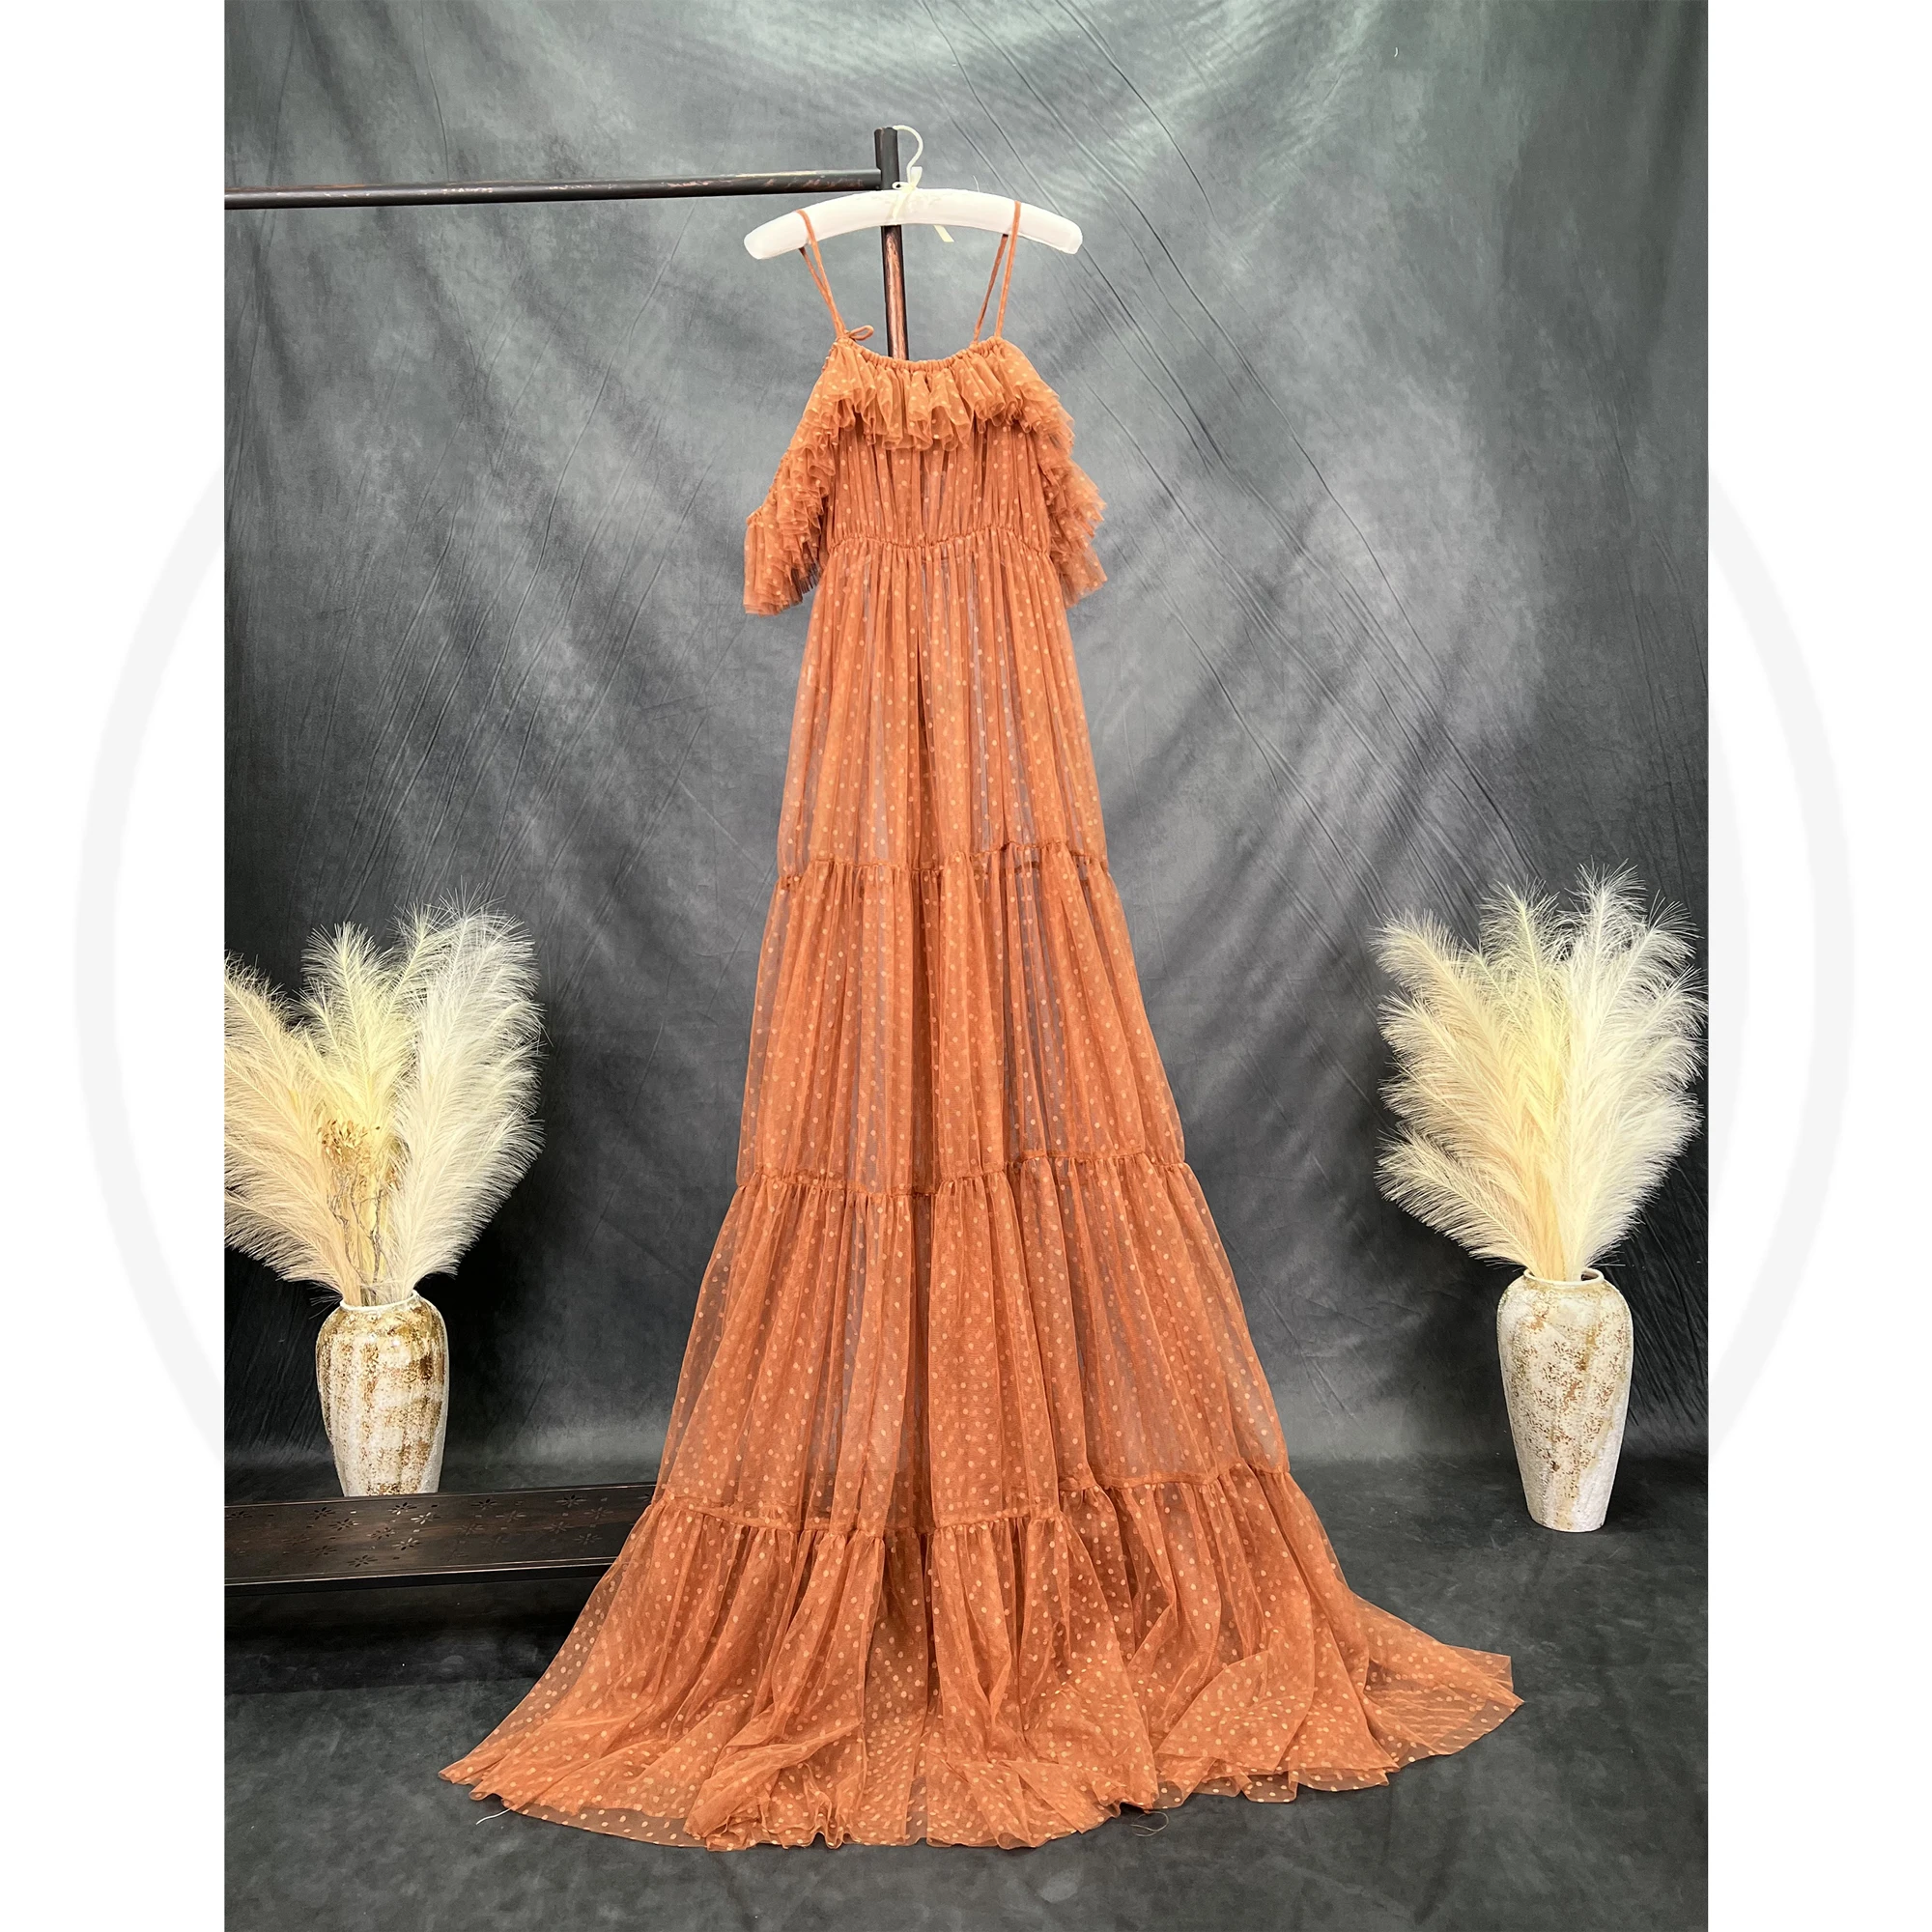 Don & Judy elegancka sukienka ciążowa tiulowa sukienka fotograficzna wesele Baby Shower kobiety sesja zdjęciowa rekwizyty niestandardowe